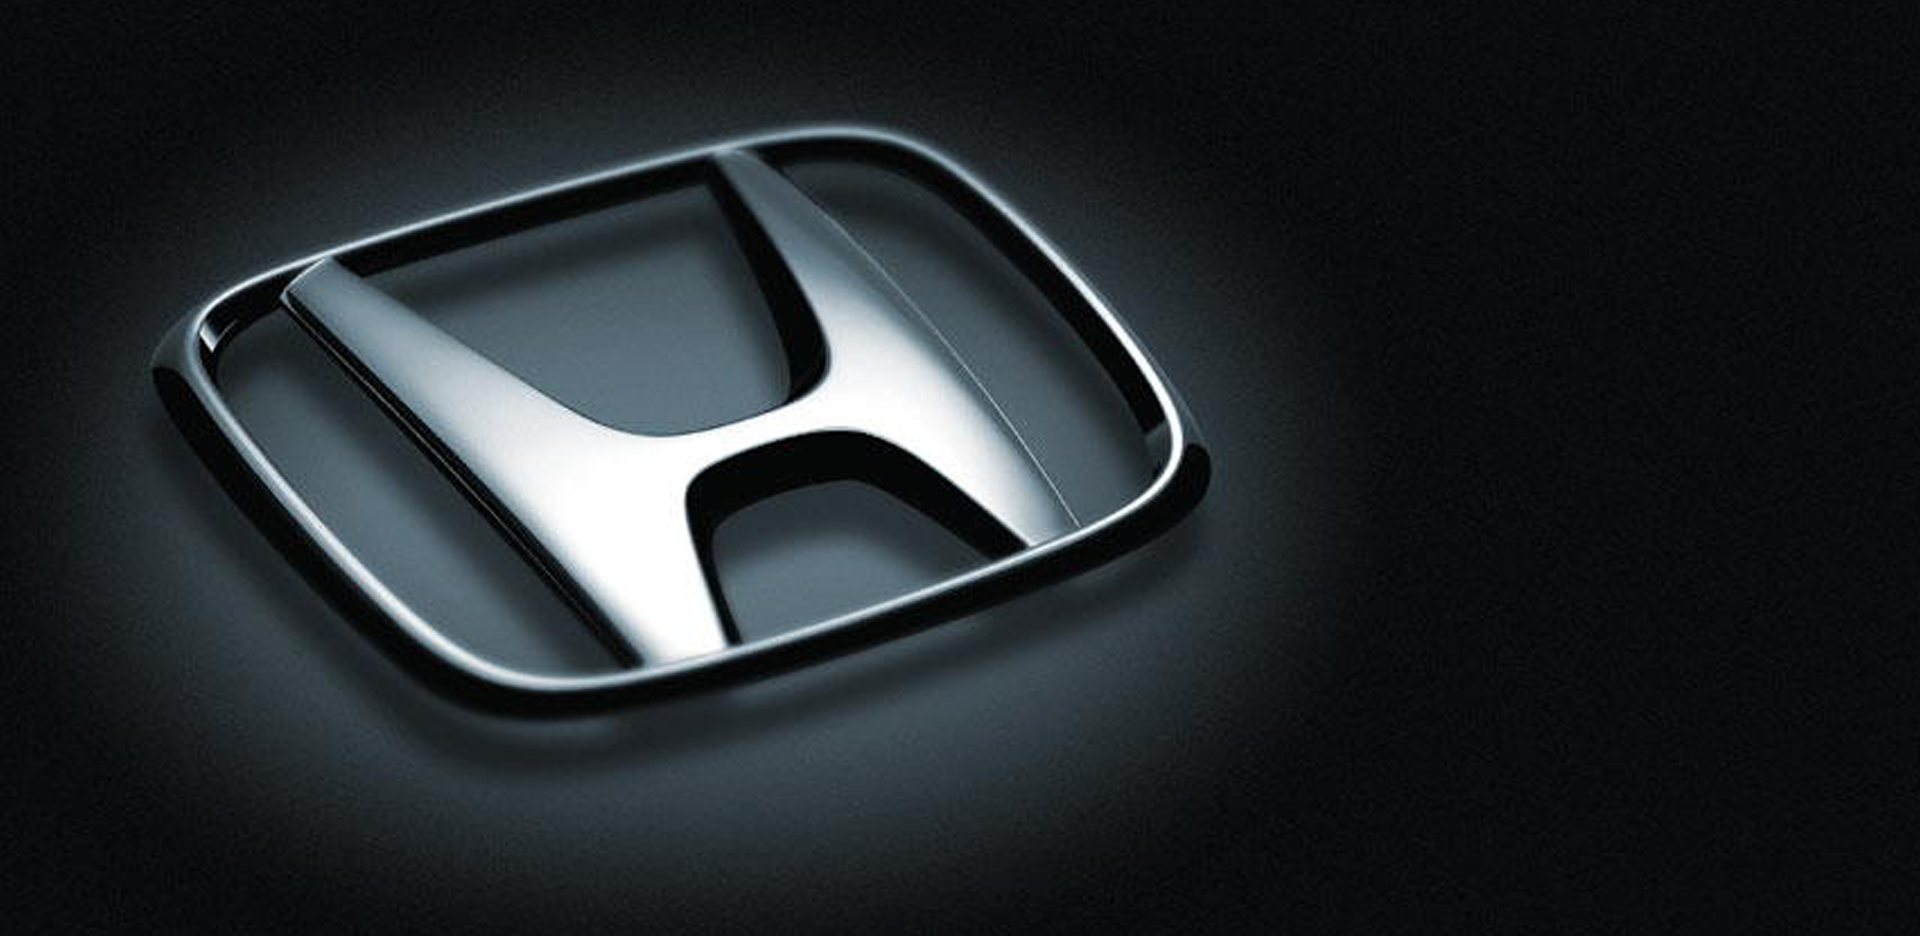 Honda Emblem And Logo Imid Wallpaper